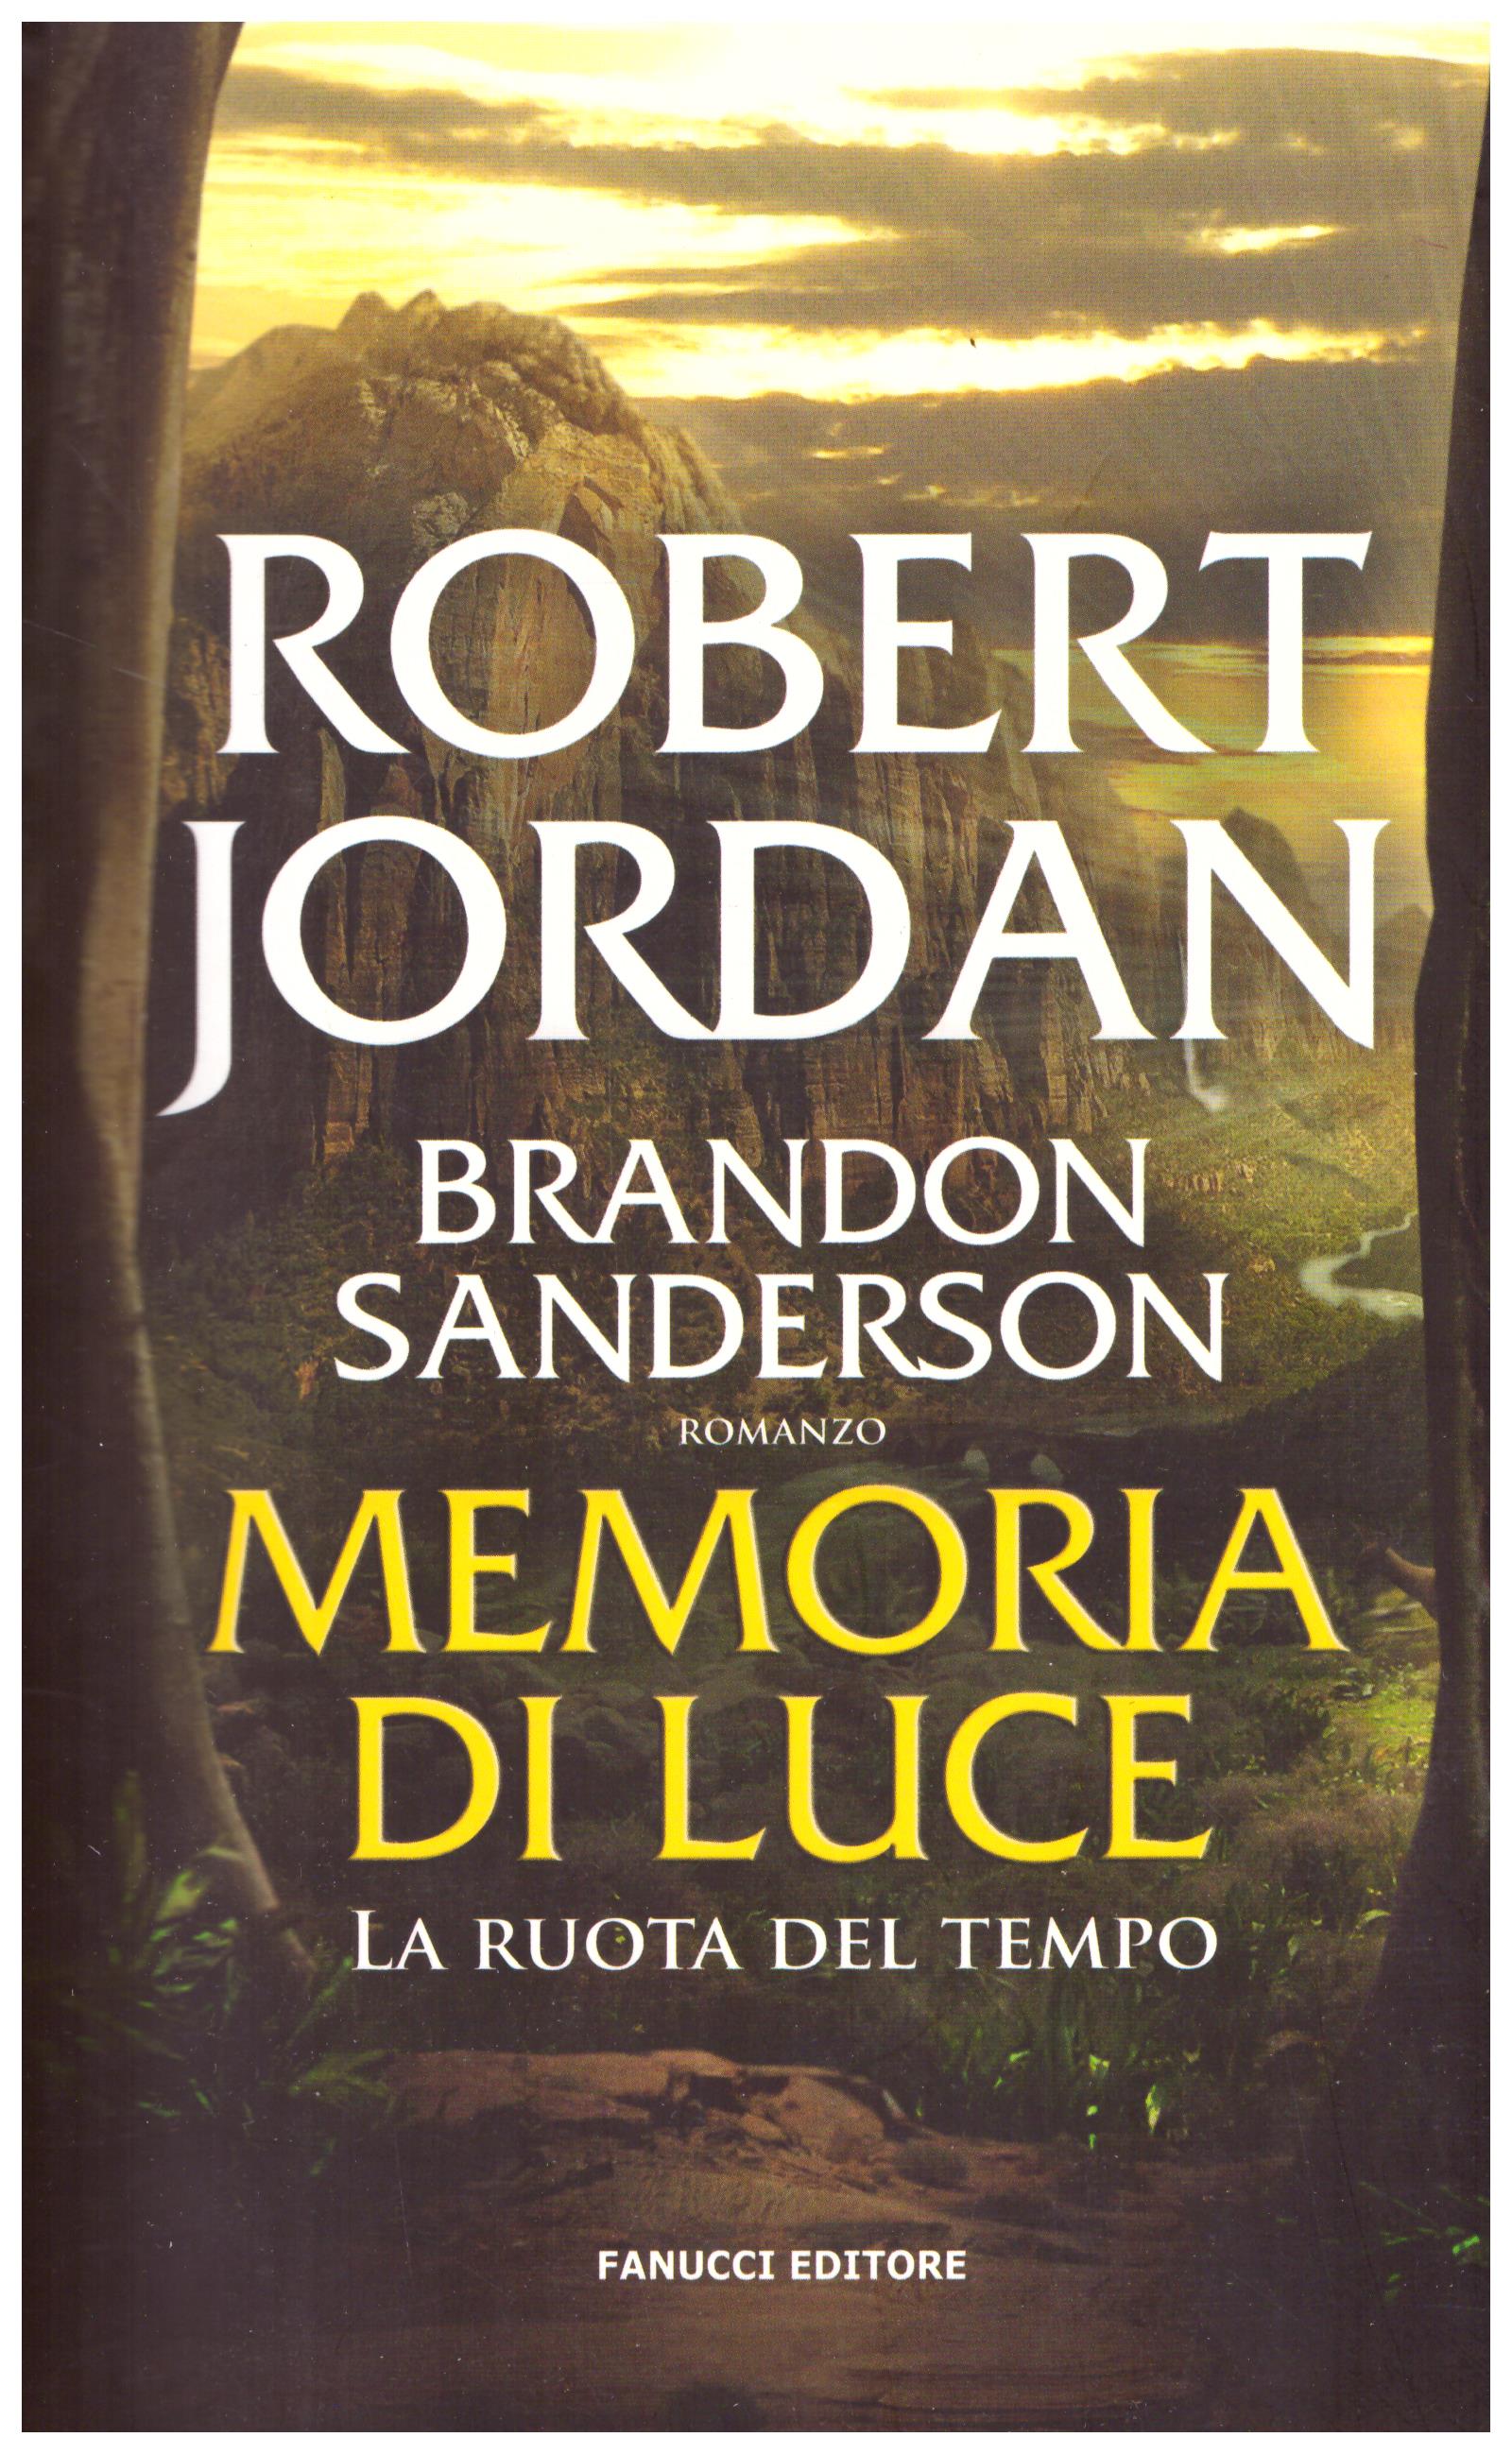 Titolo: La ruota del tempo, Memoria di luce libro quattordicesimo Autore: Robert Jordan, Brandon Sanderson Editore: Fanucci, 2013